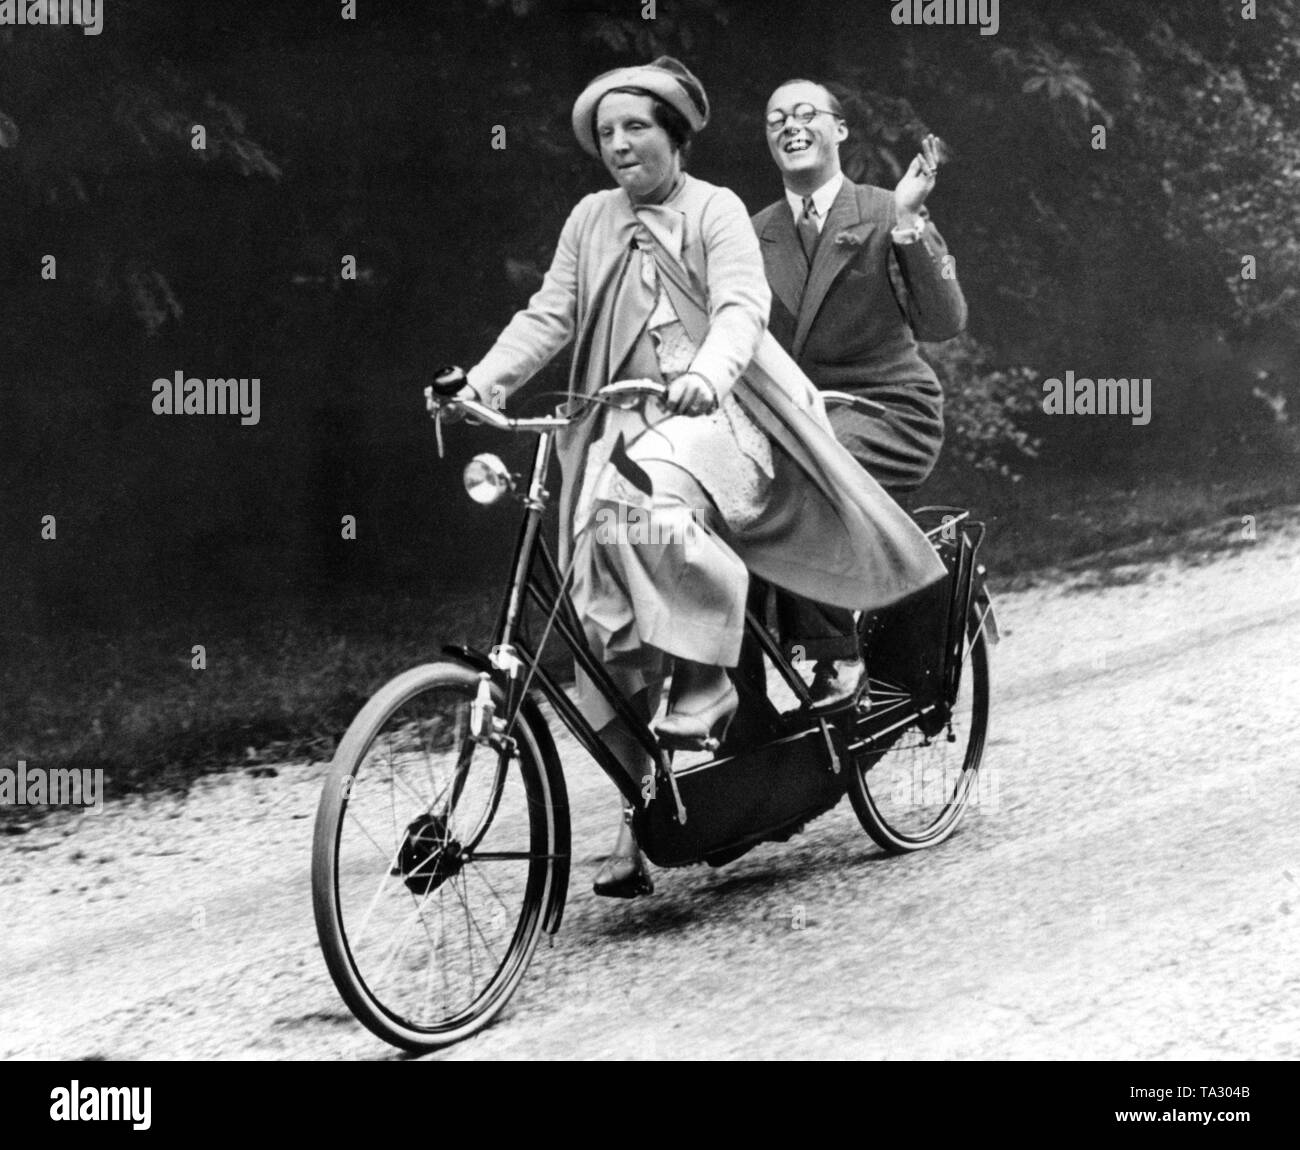 La princesse Juliana des Pays-Bas et son futur époux le Prince Bernhard von Lippe-Biesterfeld rouler ensemble sur un tandem. Banque D'Images